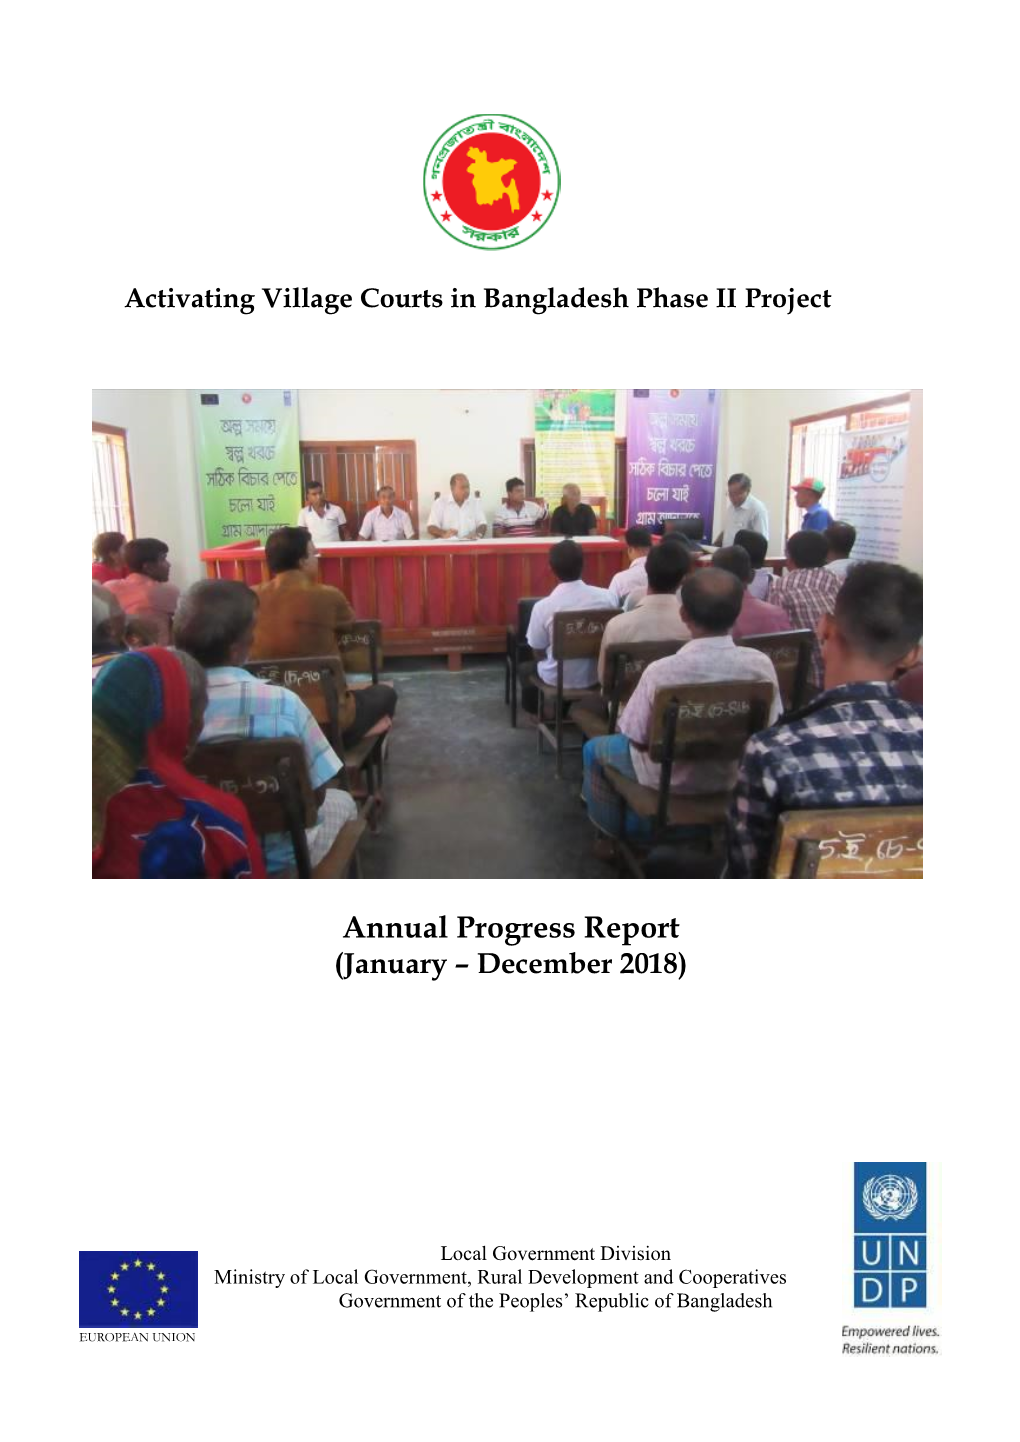 Annual Progress Report 2018